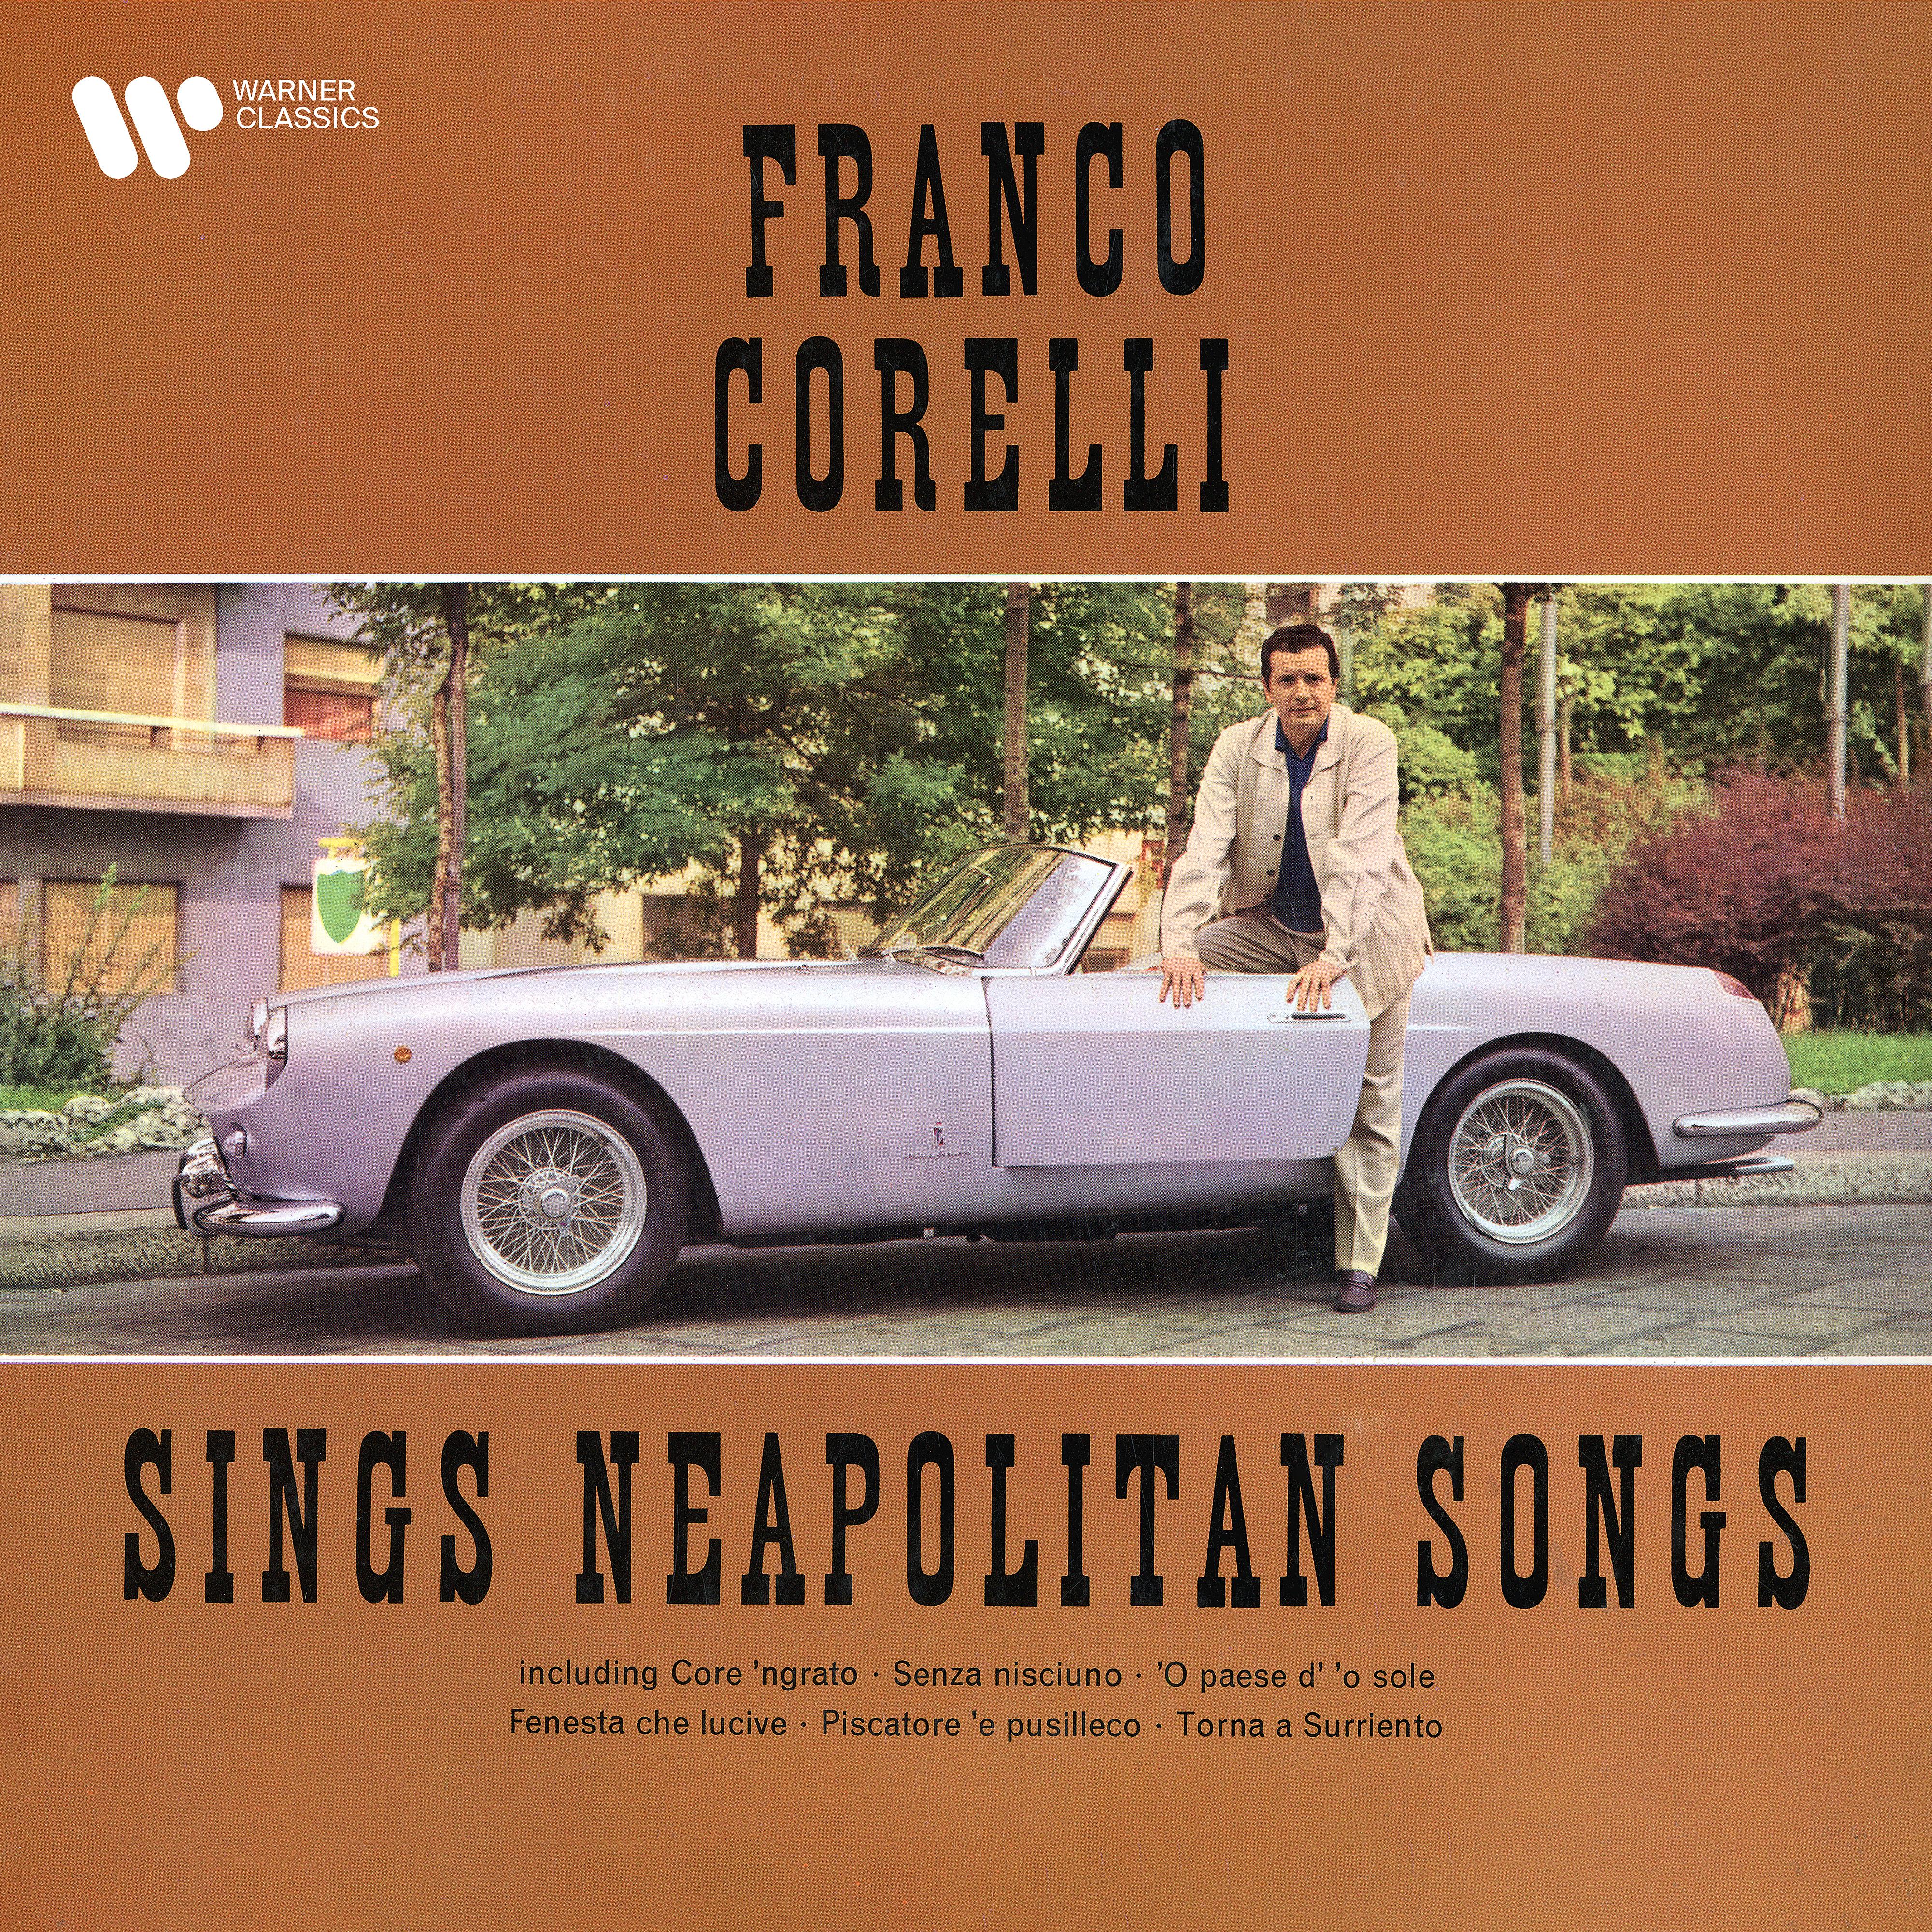 Постер альбома Neapolitan Songs